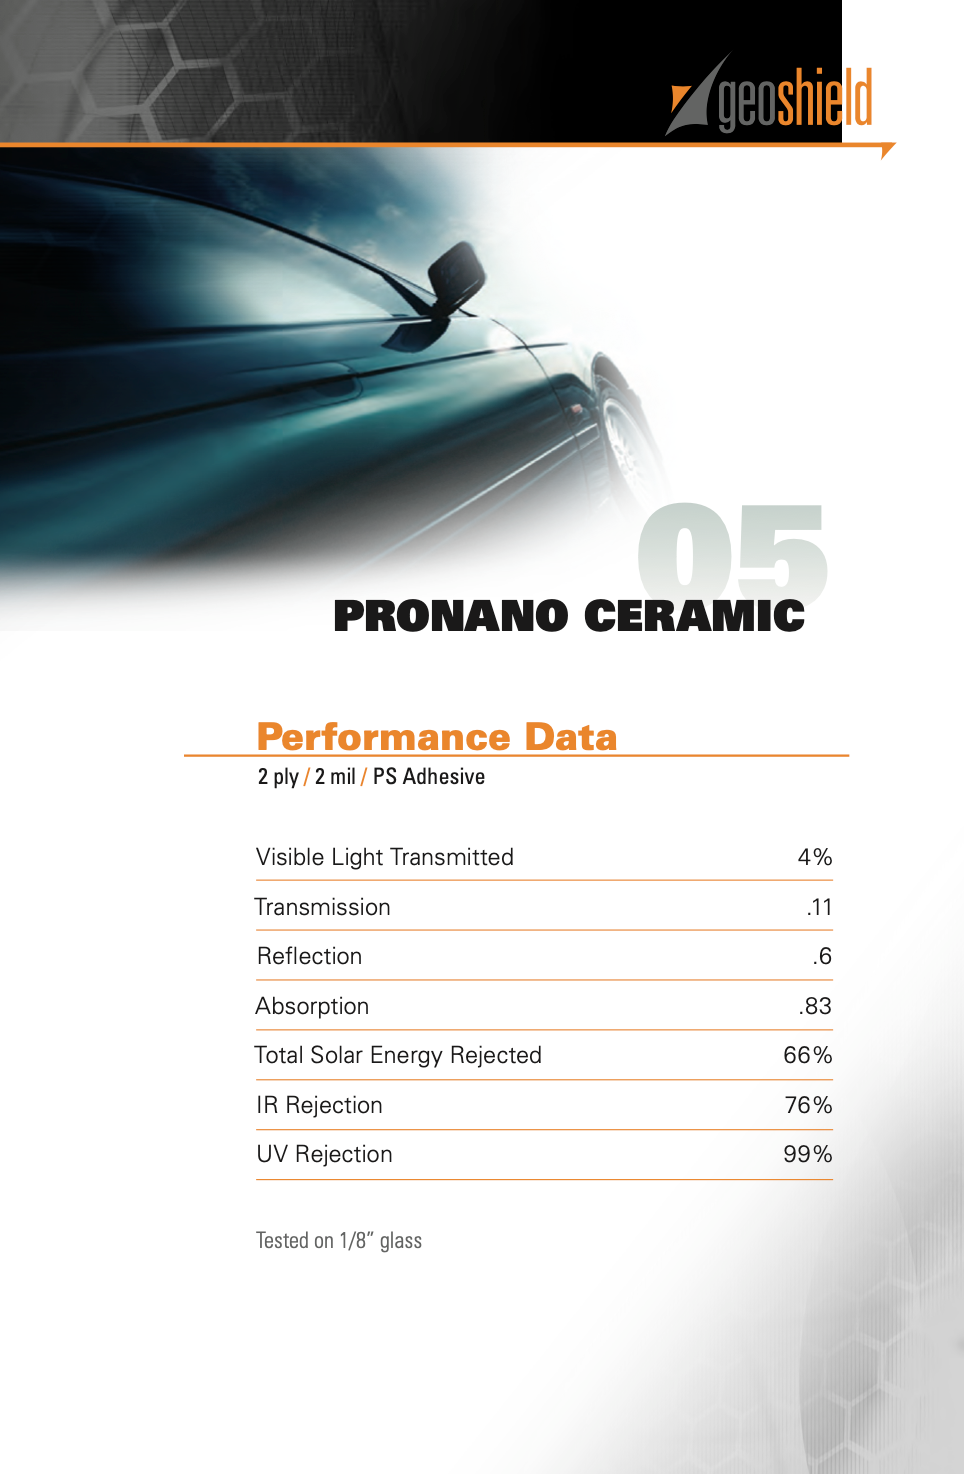 Performance data for Pro Nano 5%